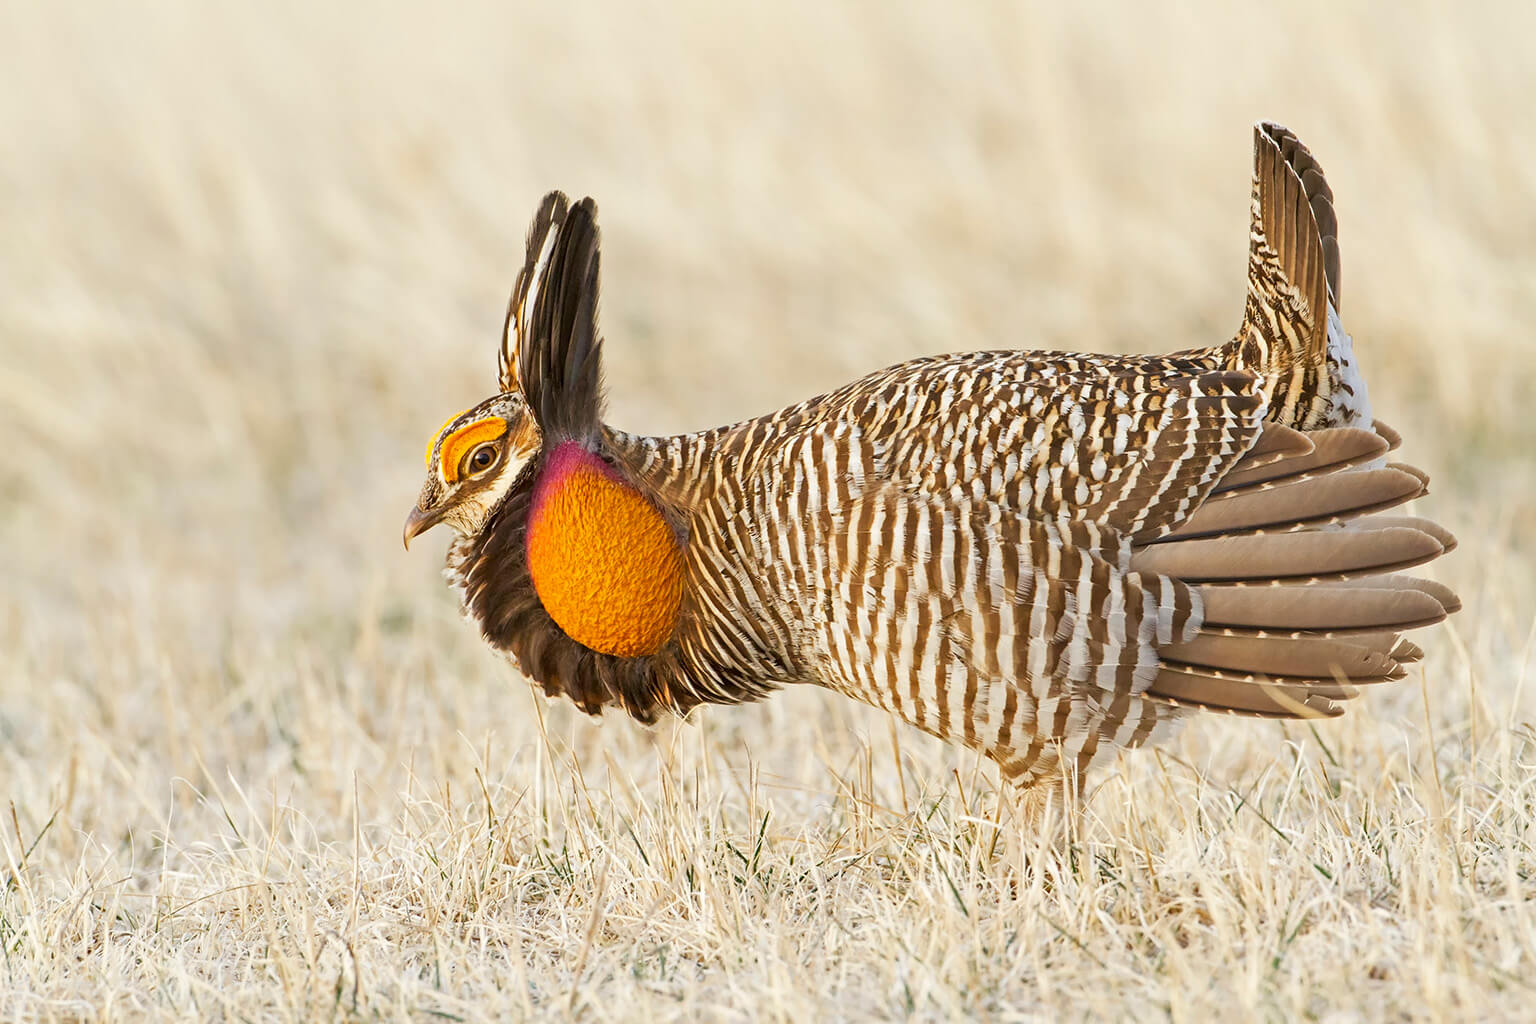 Greater Prairie Chicken in Profile